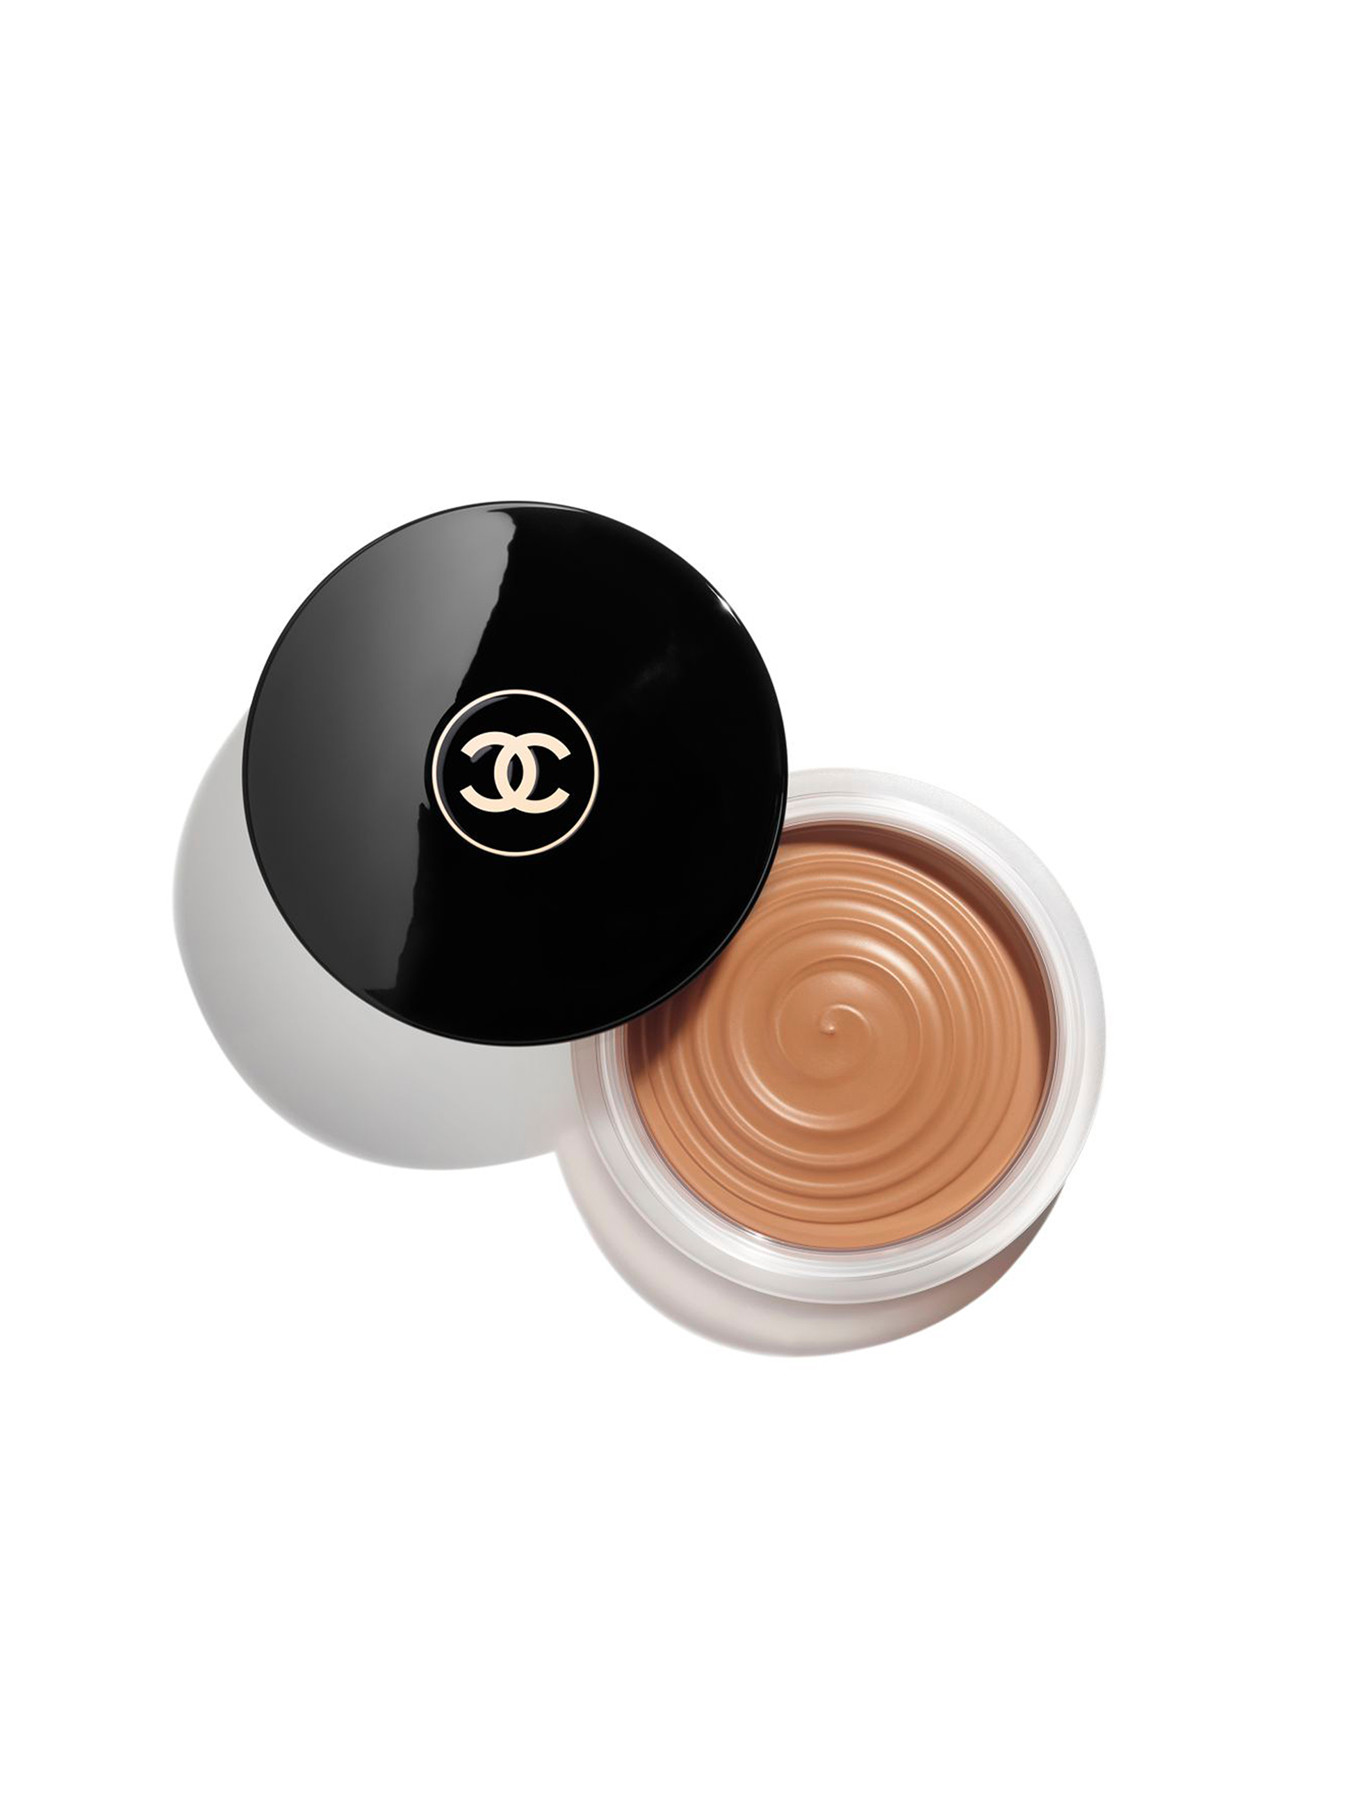 Tarte Breezy Cream Bronzer vs Chanel Soleil Tan de Chanel • Girl Loves Gloss